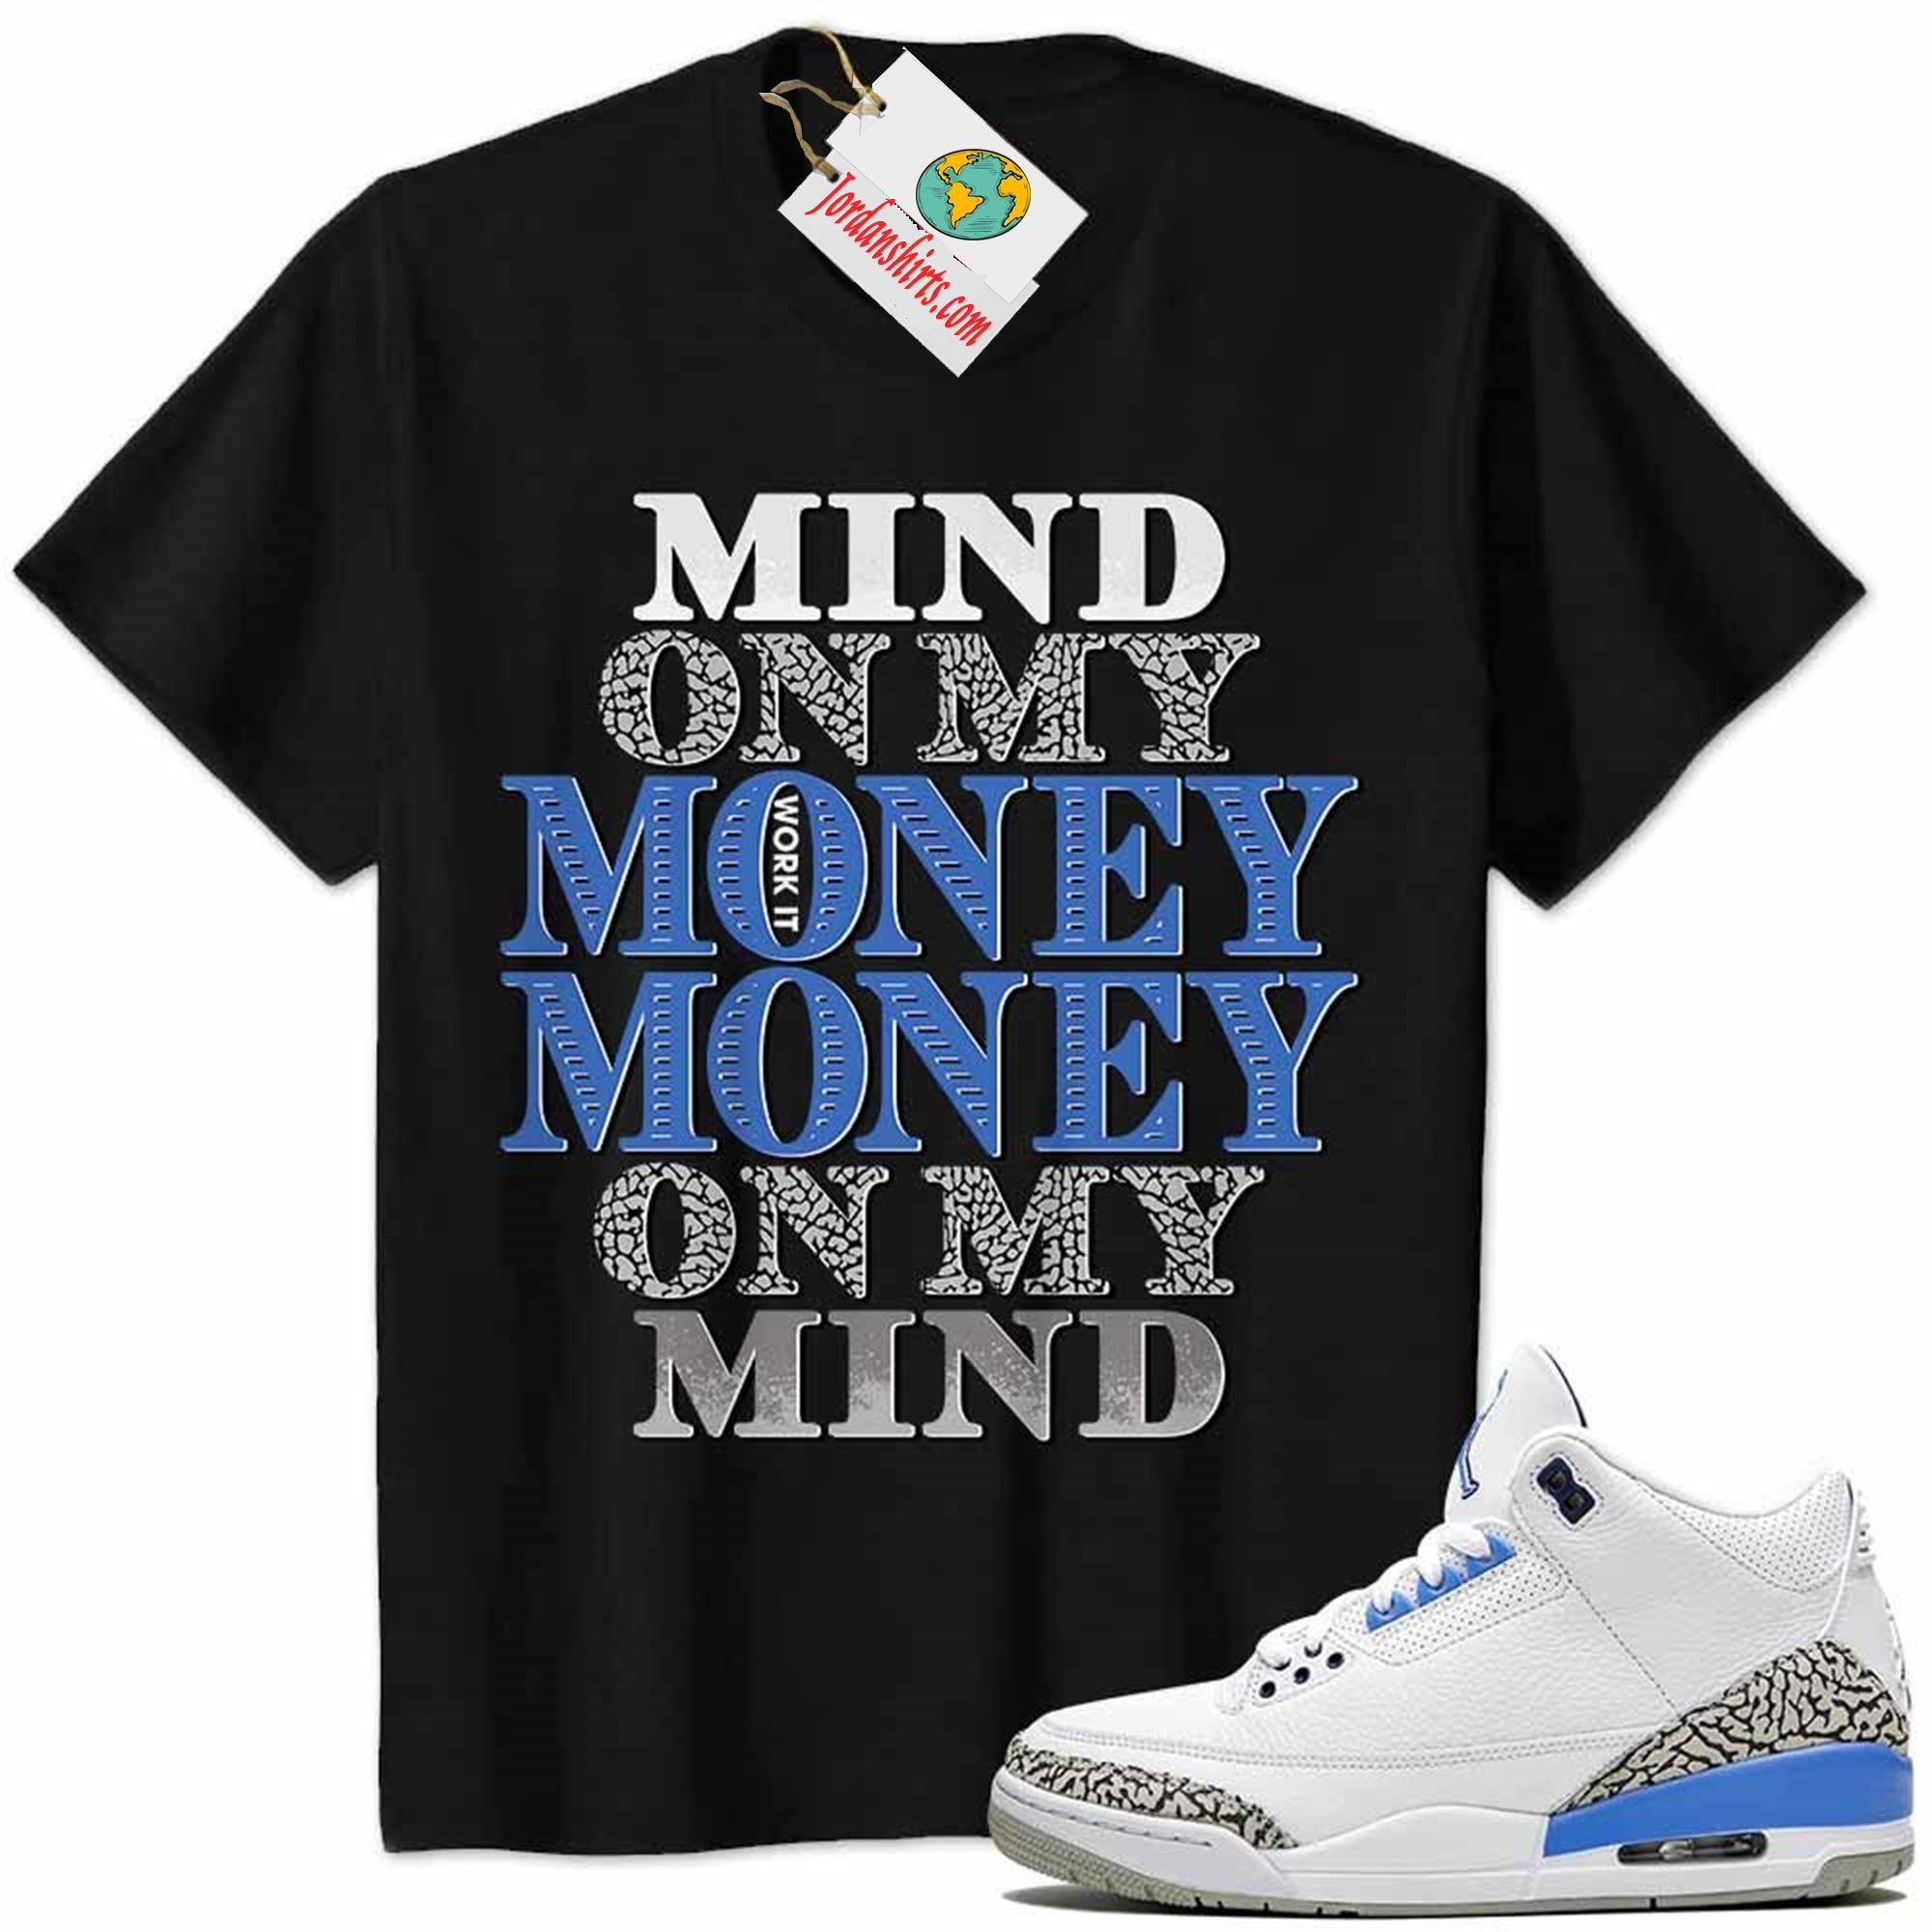 Jordan 3 Shirt, Jordan 3 Unc Shirt Mind On My Money Money On My Mind Black Full Size Up To 5xl